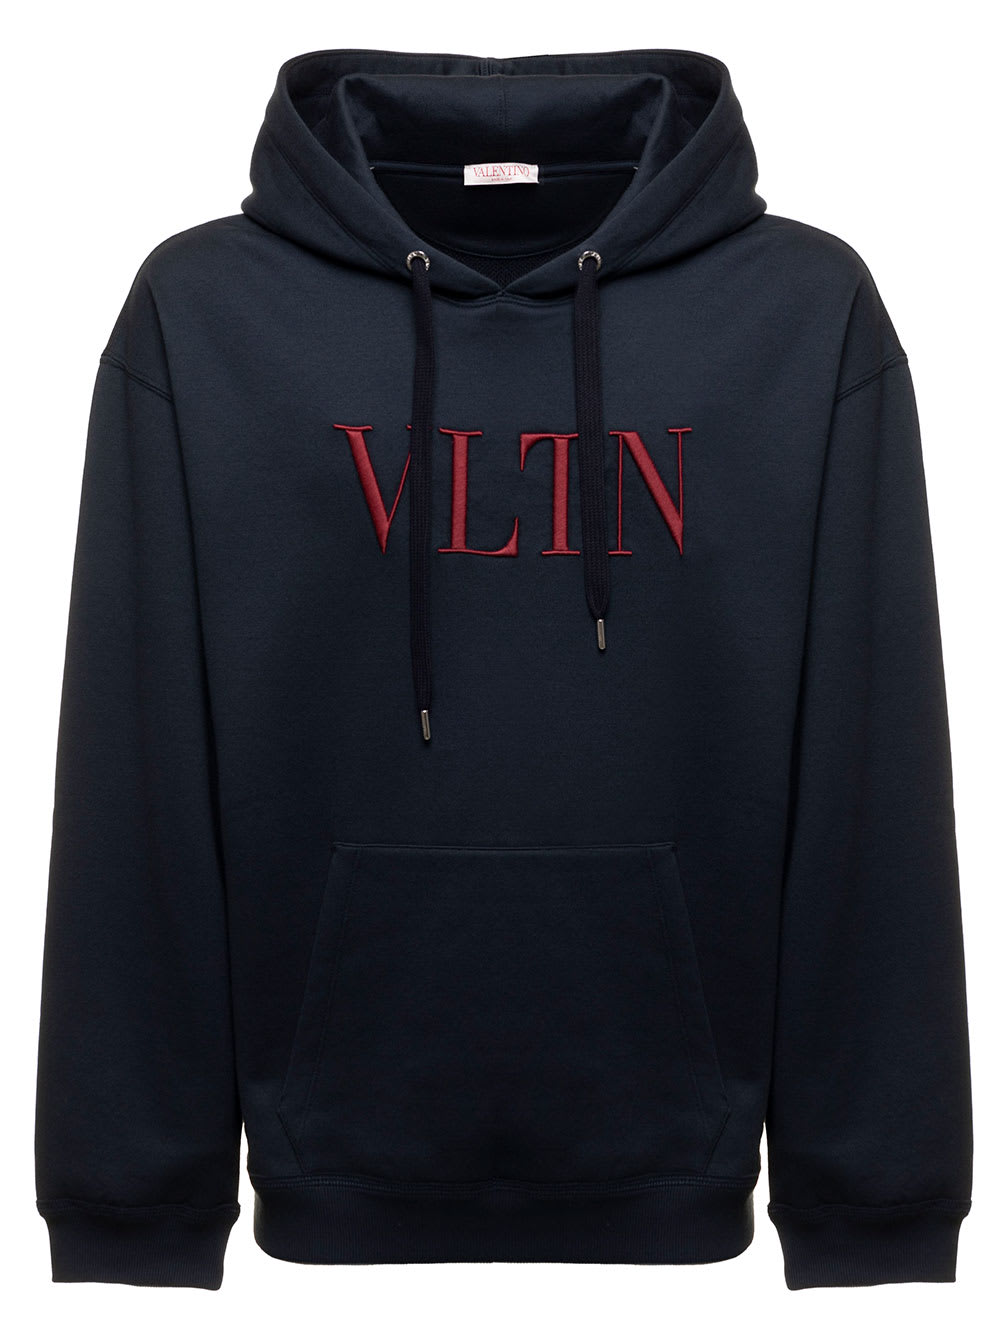 Valentino Mans Blue Cotton Jersey Sweatshirt With Embroidered Vltn Logo